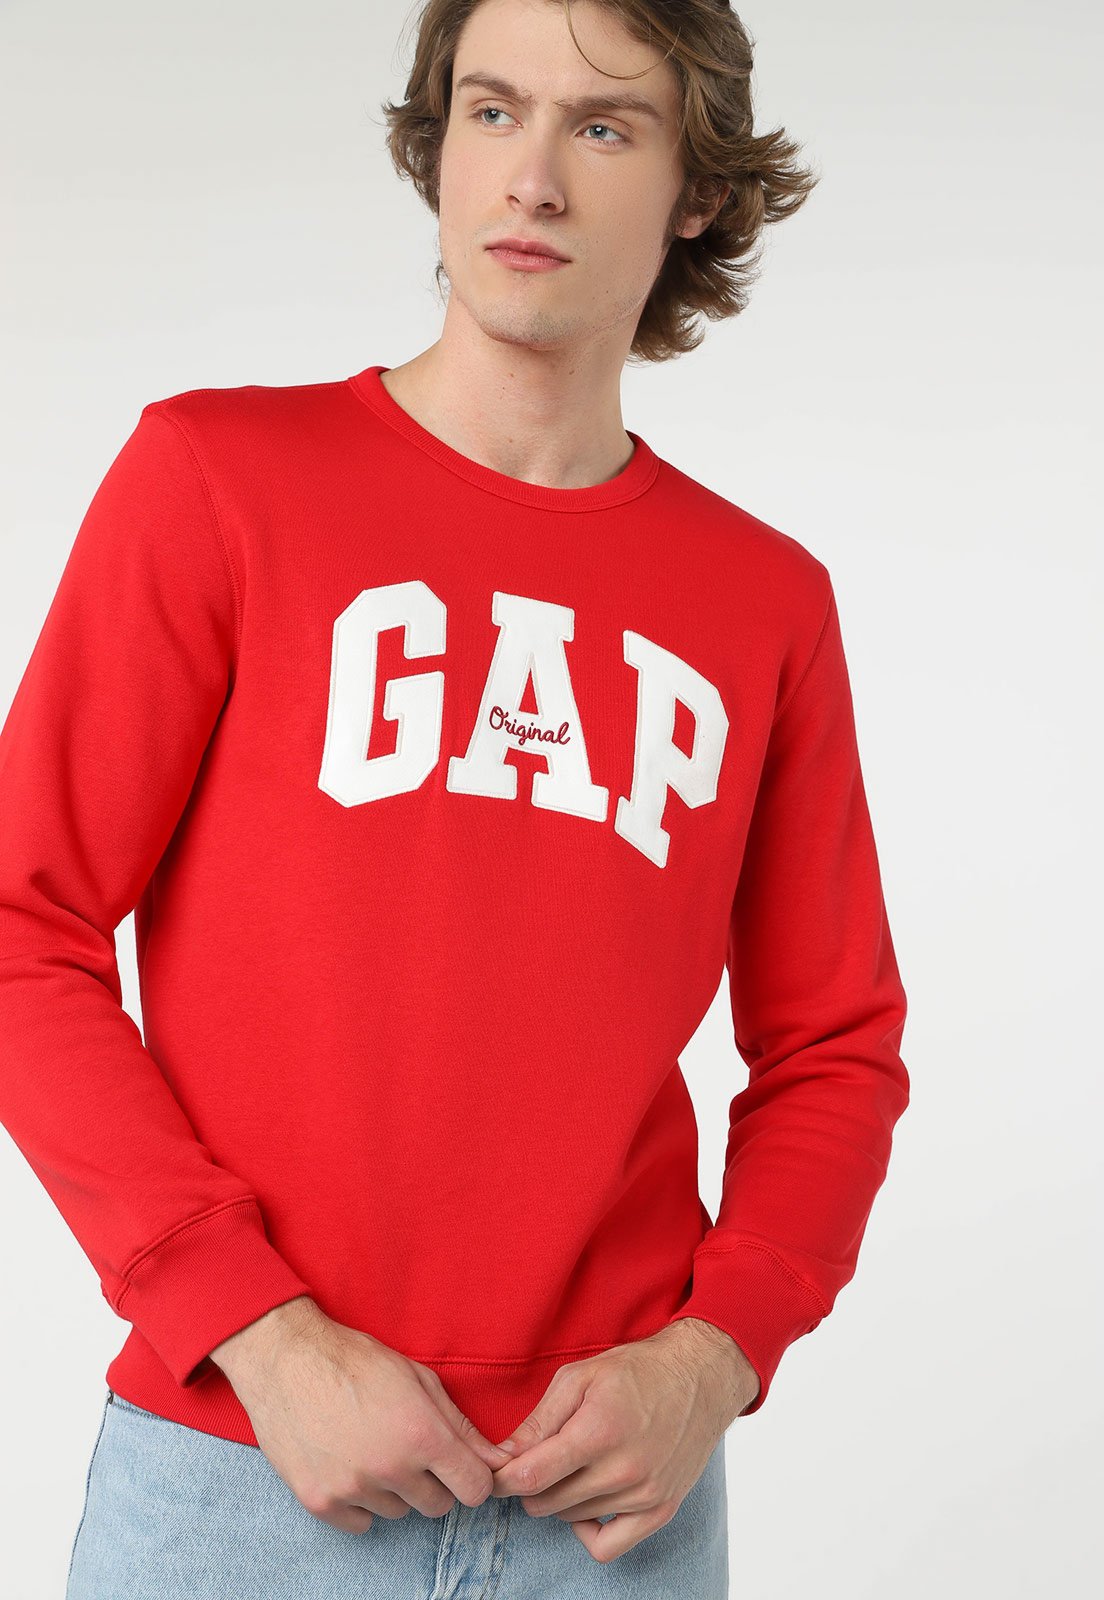 Blusa Moletom Gap Cinza Escuro e Vermelho - R1 Store Moda e Acessórios